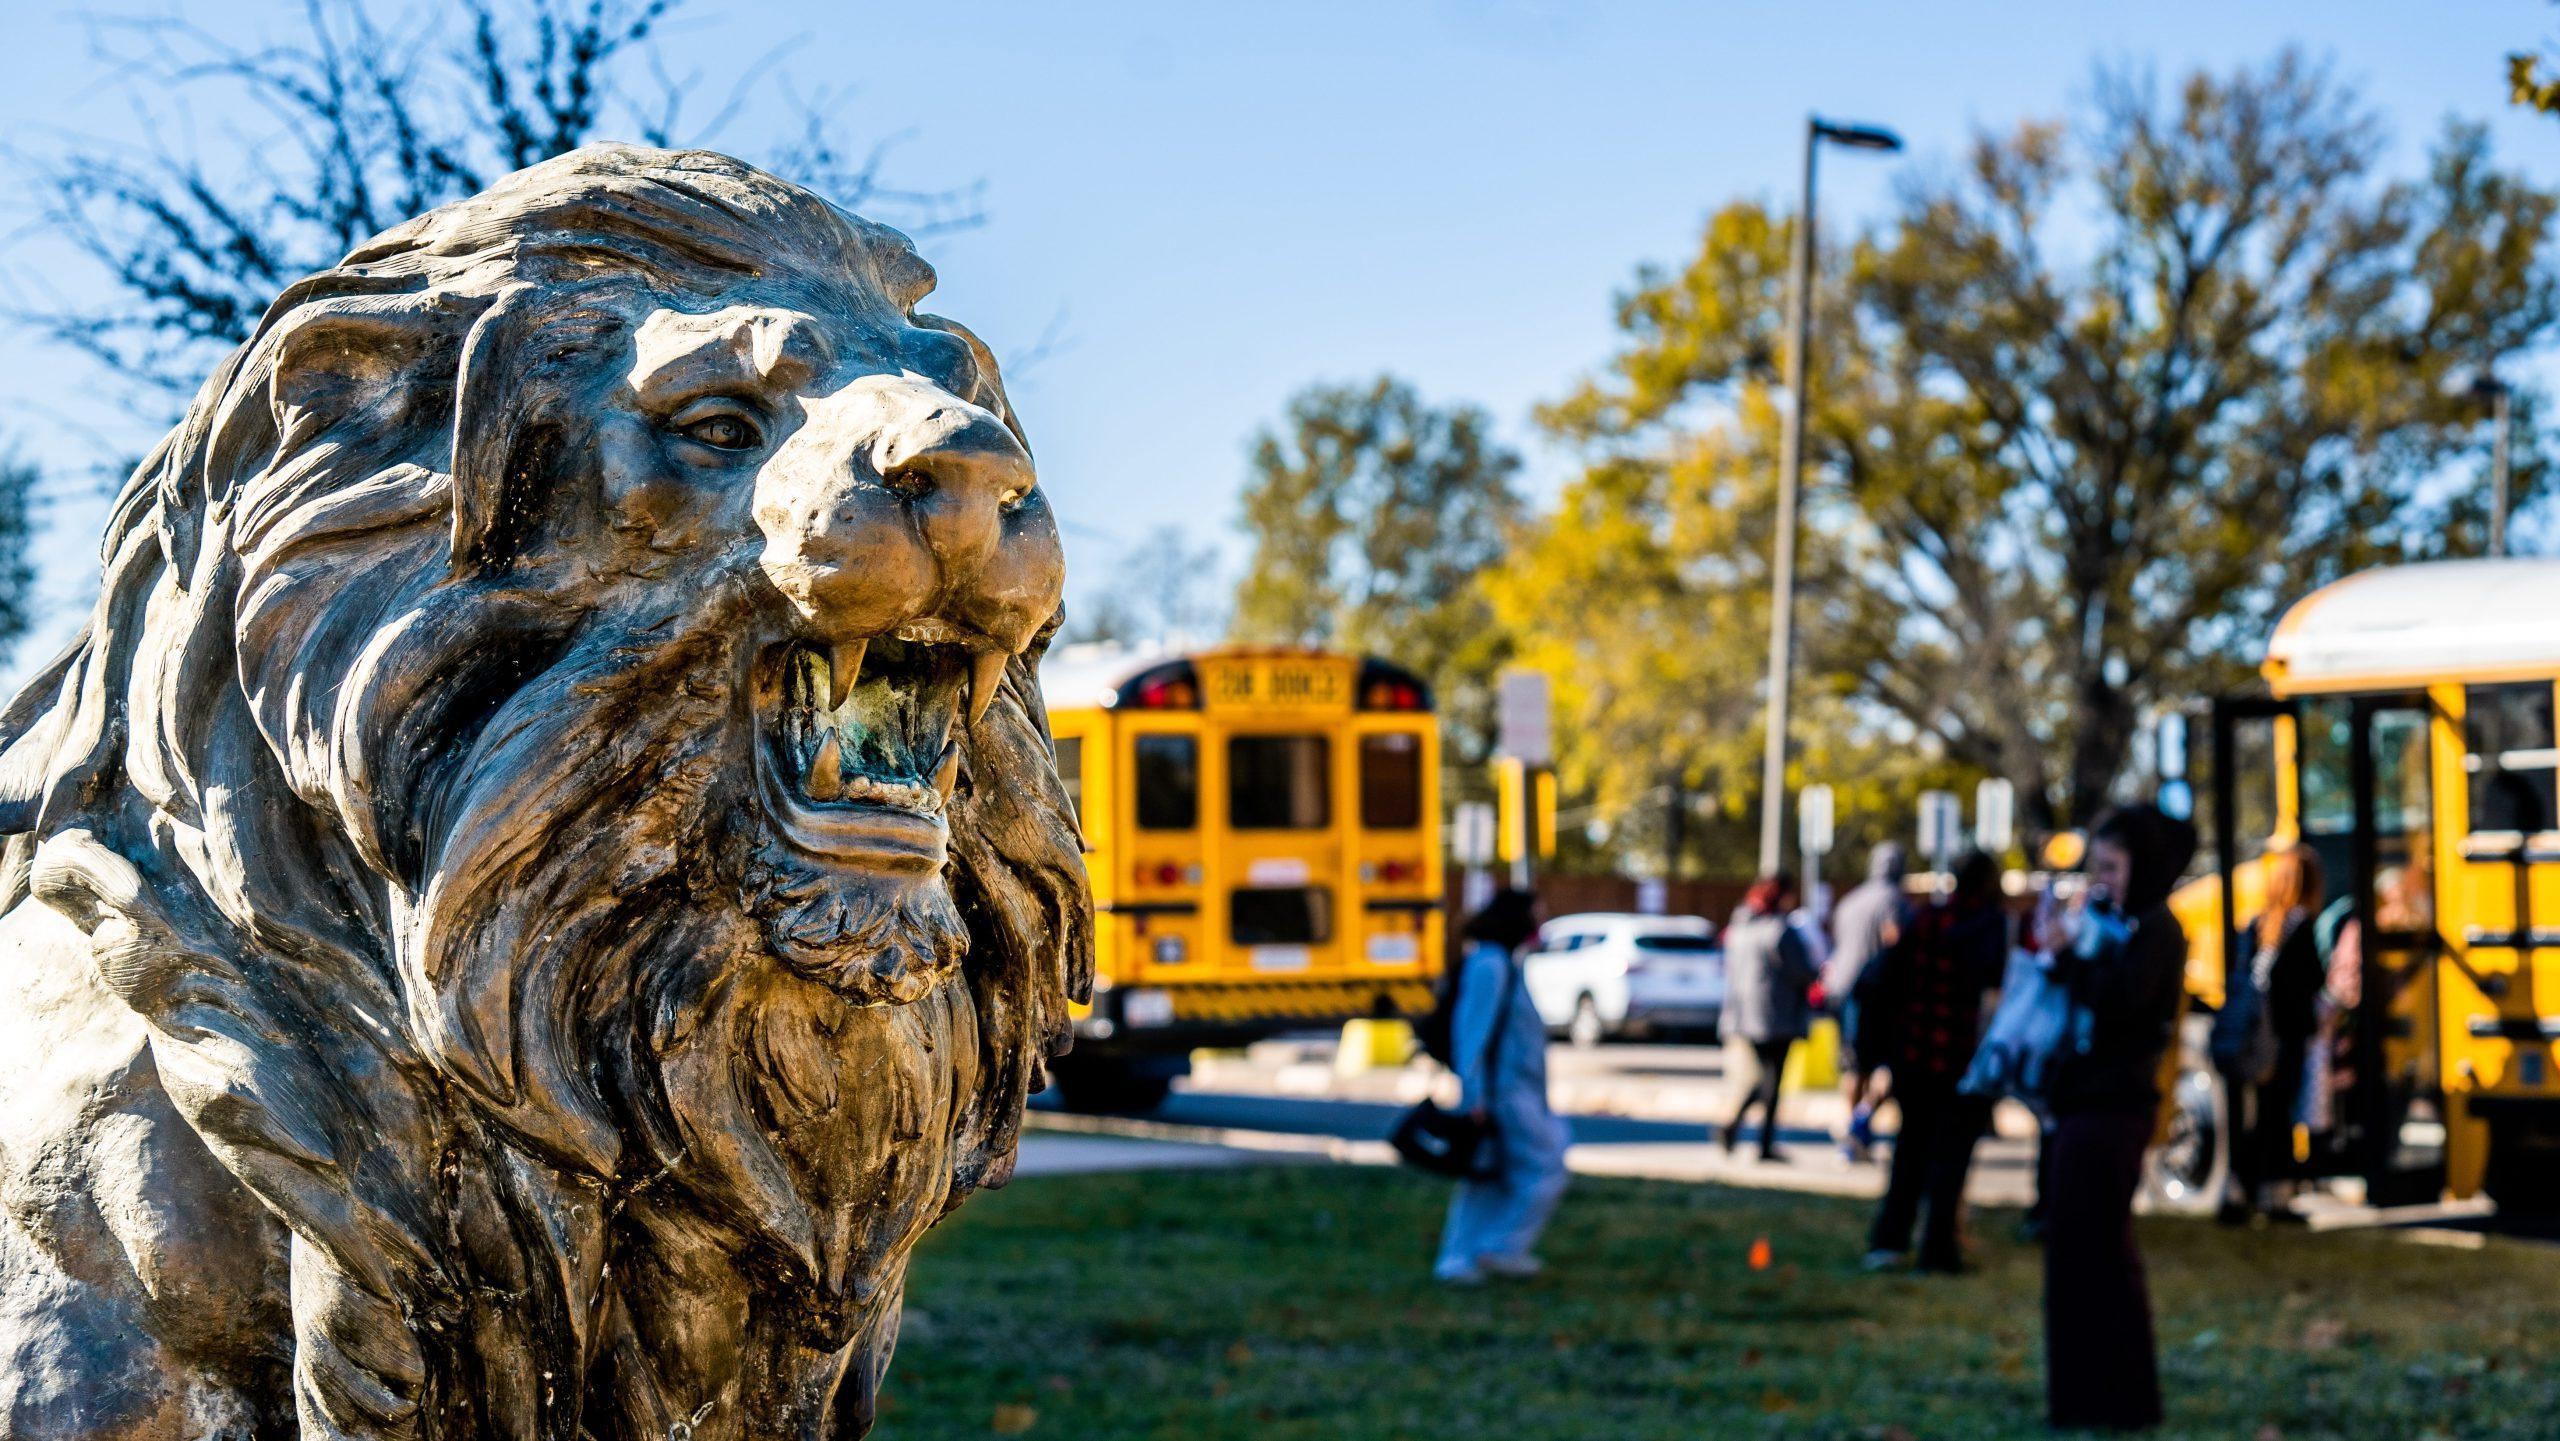 狮子雕像背后是公共汽车. 